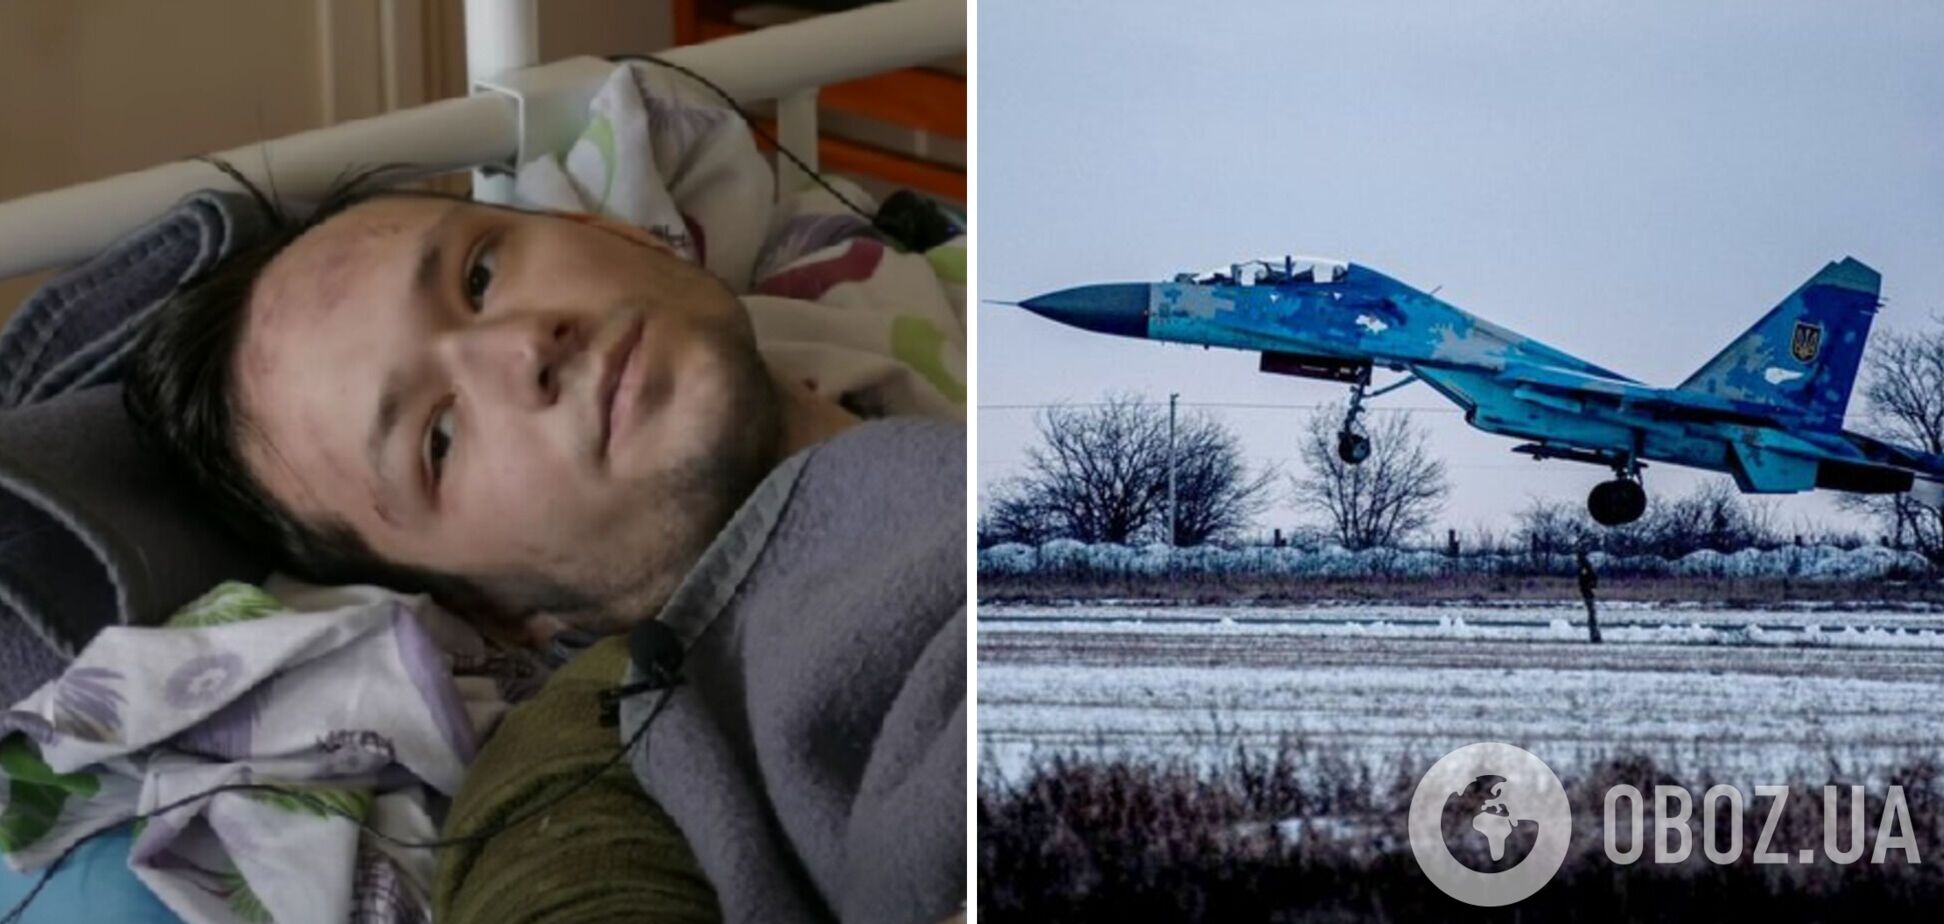 Украинский пилот попал в плен оккупантов: пропагандисты заставили его говорить о 'едином народе'